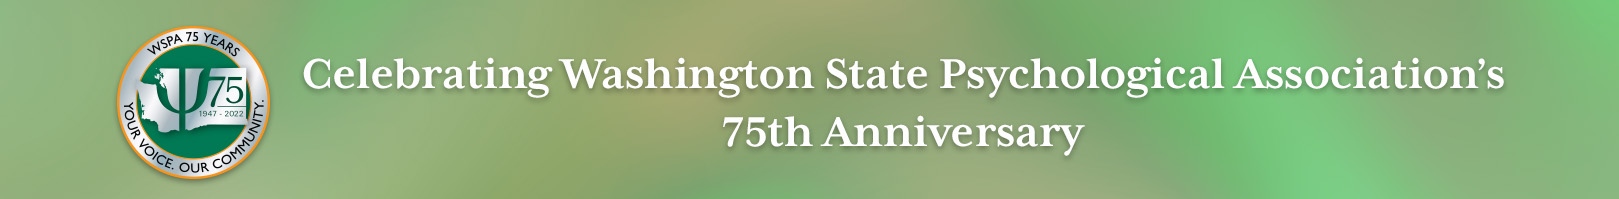 Celebrate WSPA's75th anniversary!